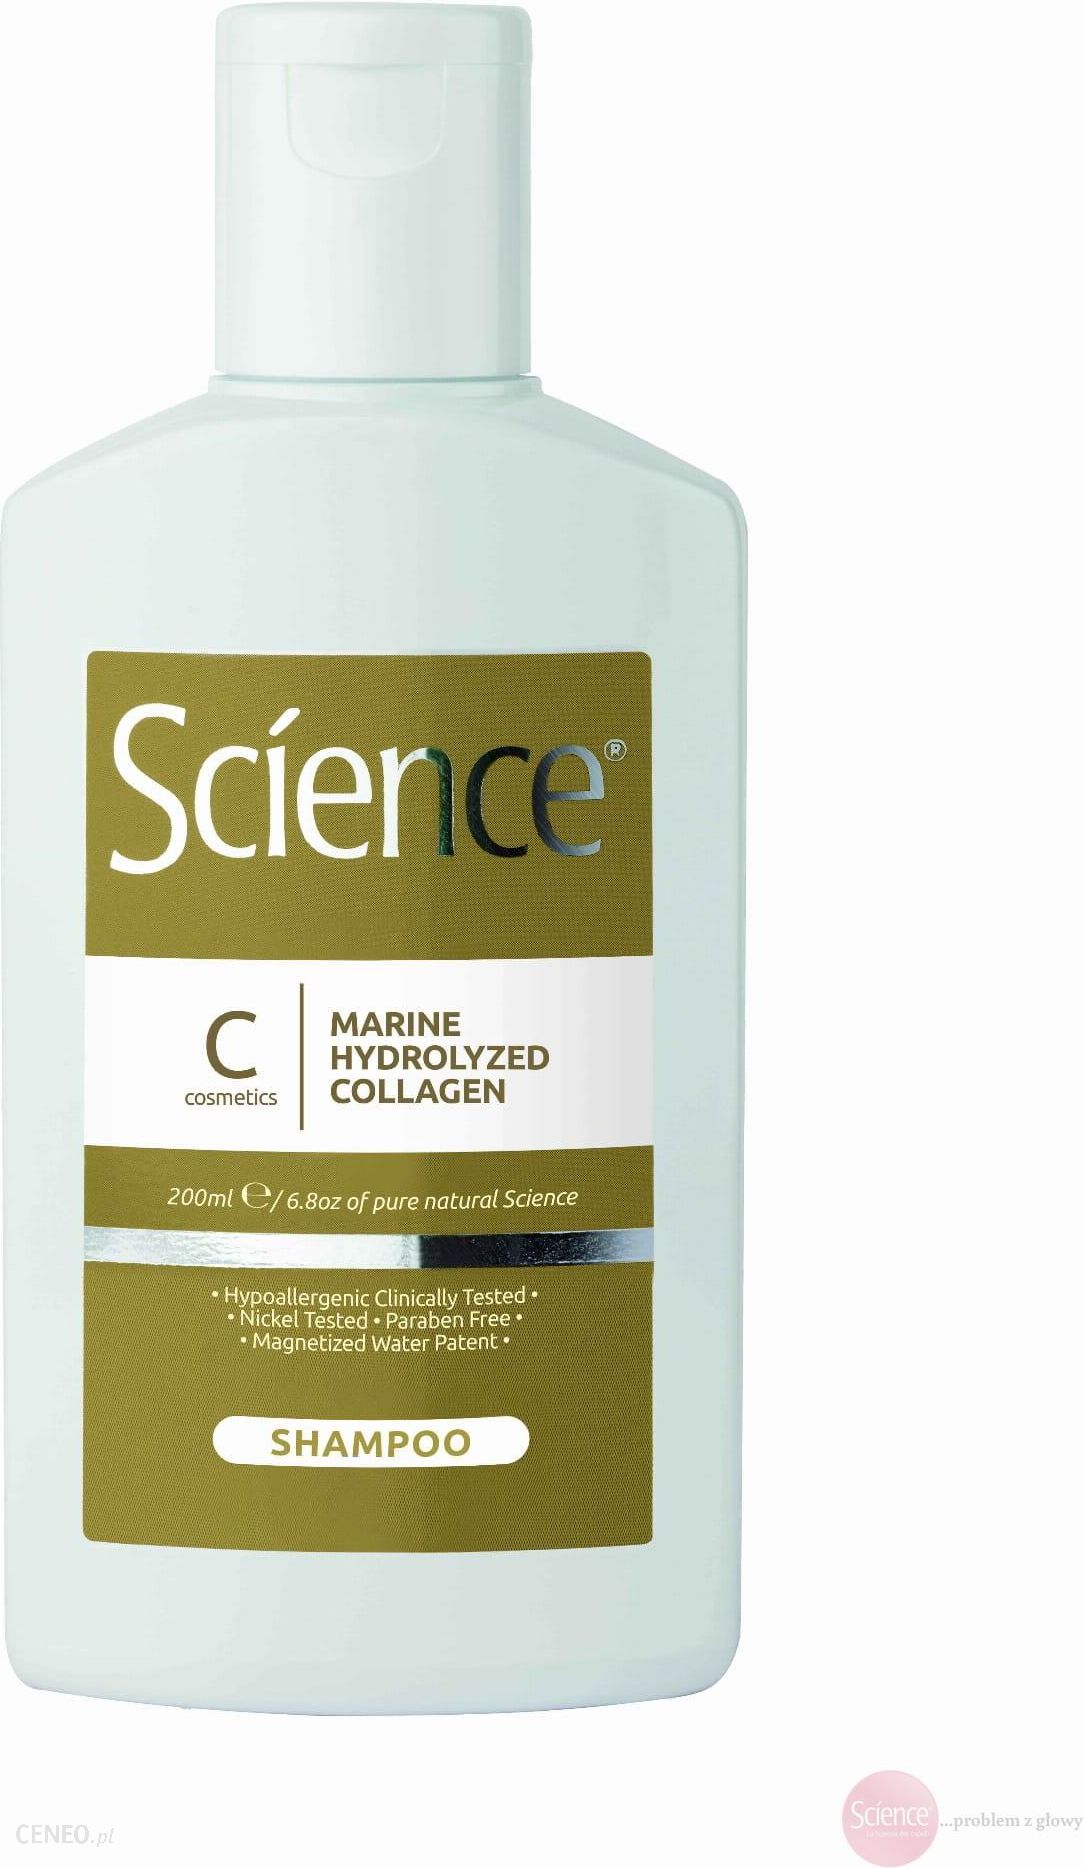 kallos kjmn szampon multivitamina energizujący 1000 ml